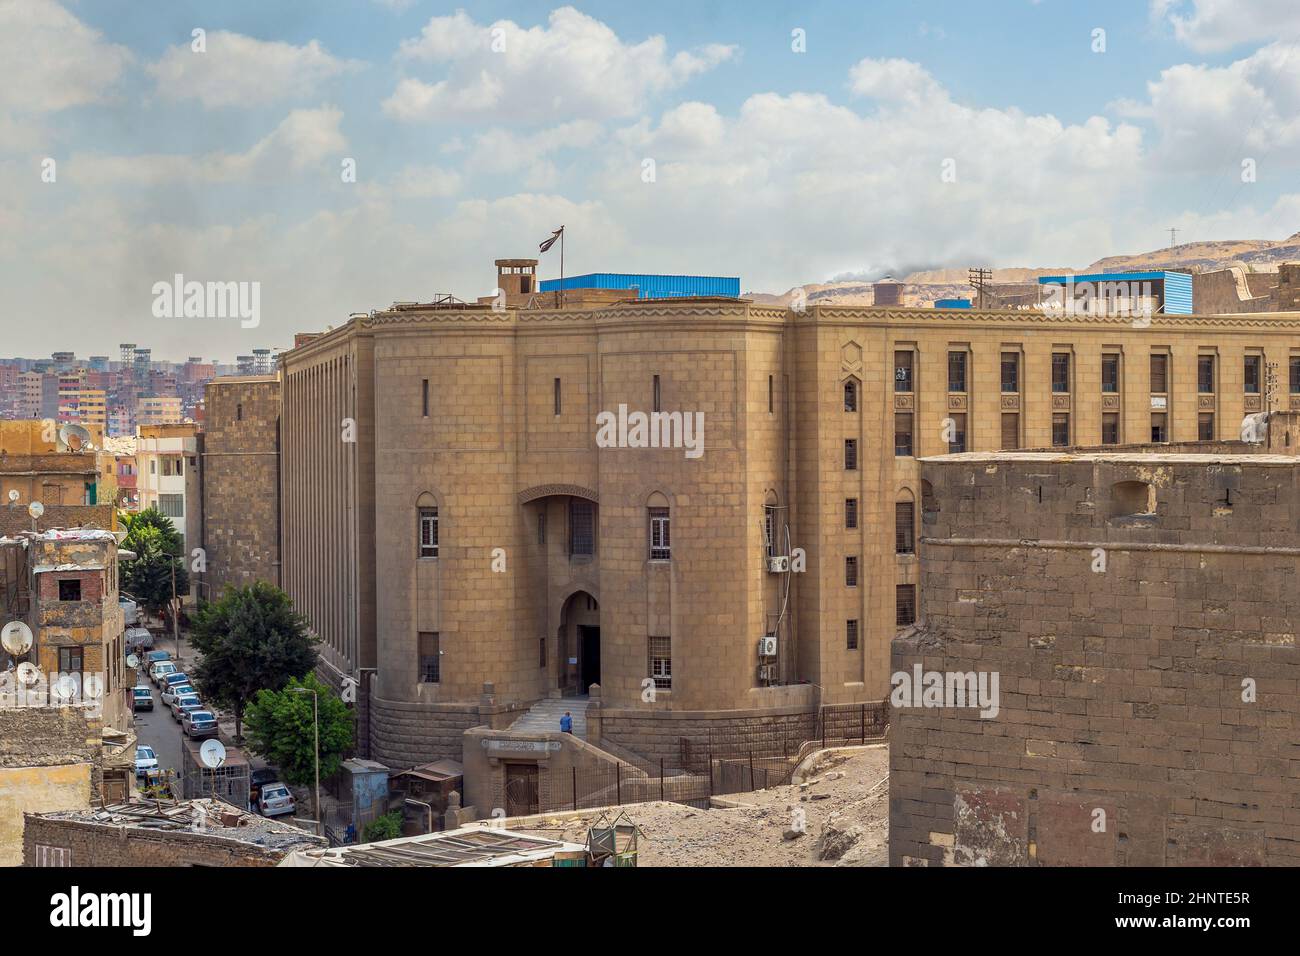 Das Nationalarchiv von Ägypten, auch bekannt als Ägyptisches Dokumentationshaus, befindet sich in der Zitadelle von Kairo, Ägypten Stockfoto